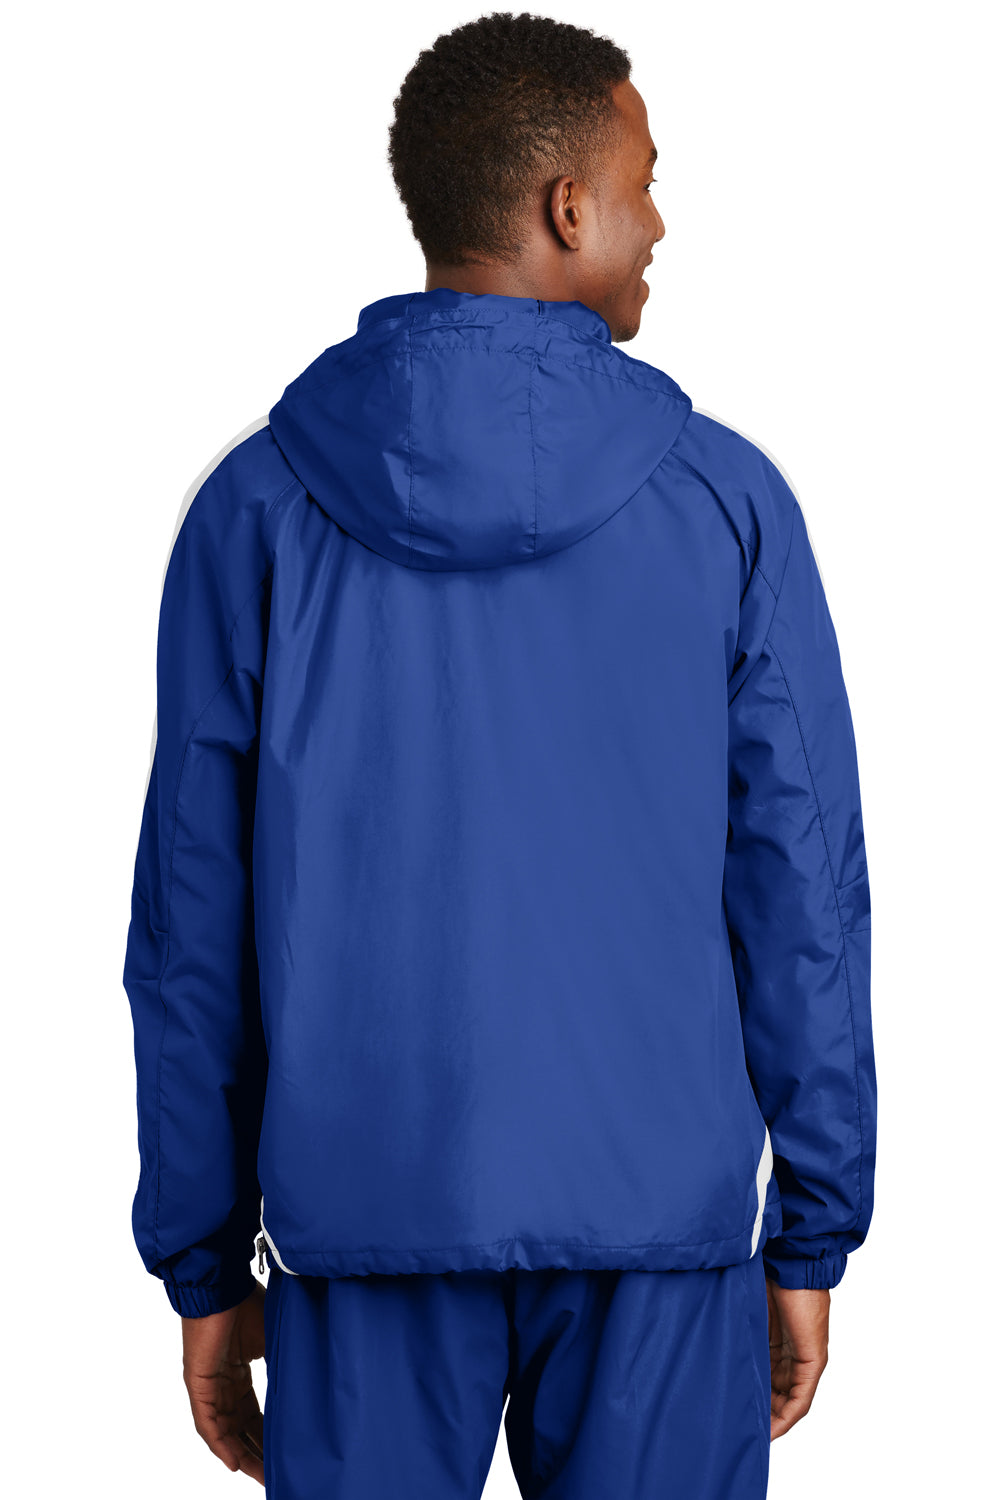 Sport-Tek JST63 Mens 1/4 Zip Hooded Jacket Royal Blue Back